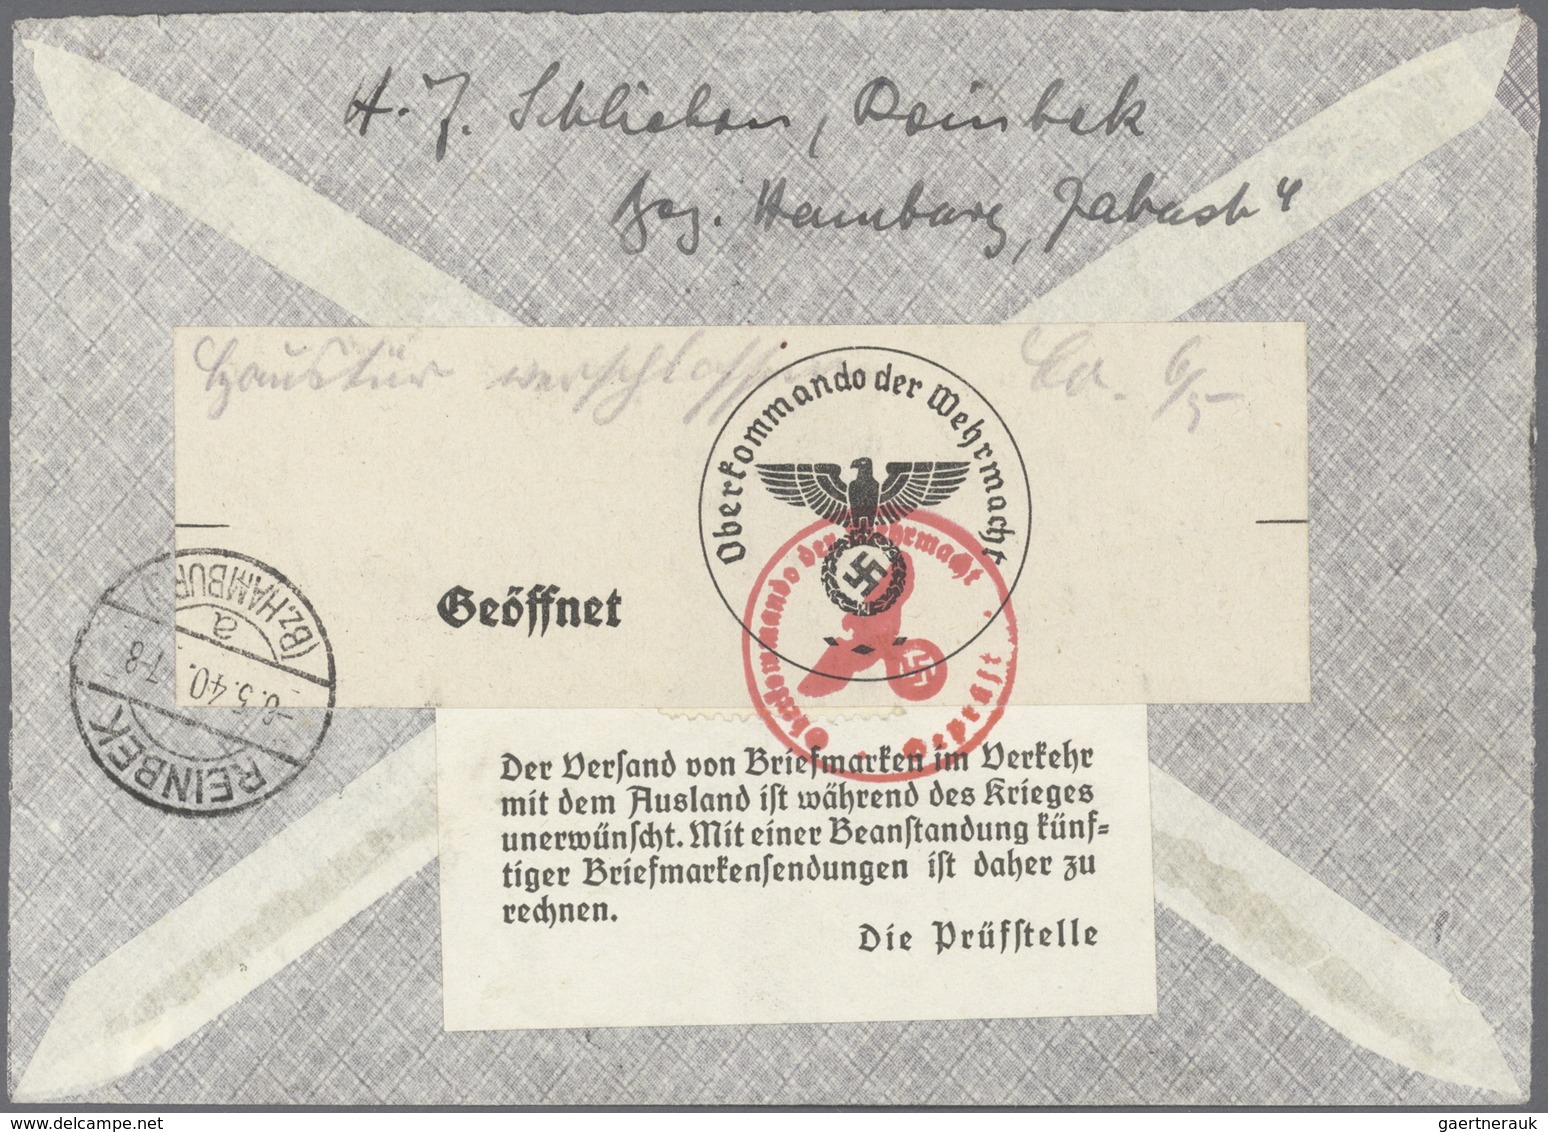 Deutschland: 1860/1980 (ca.), umfangreicher Bestand inkl. etwas Ausland mit vielen interessanten und